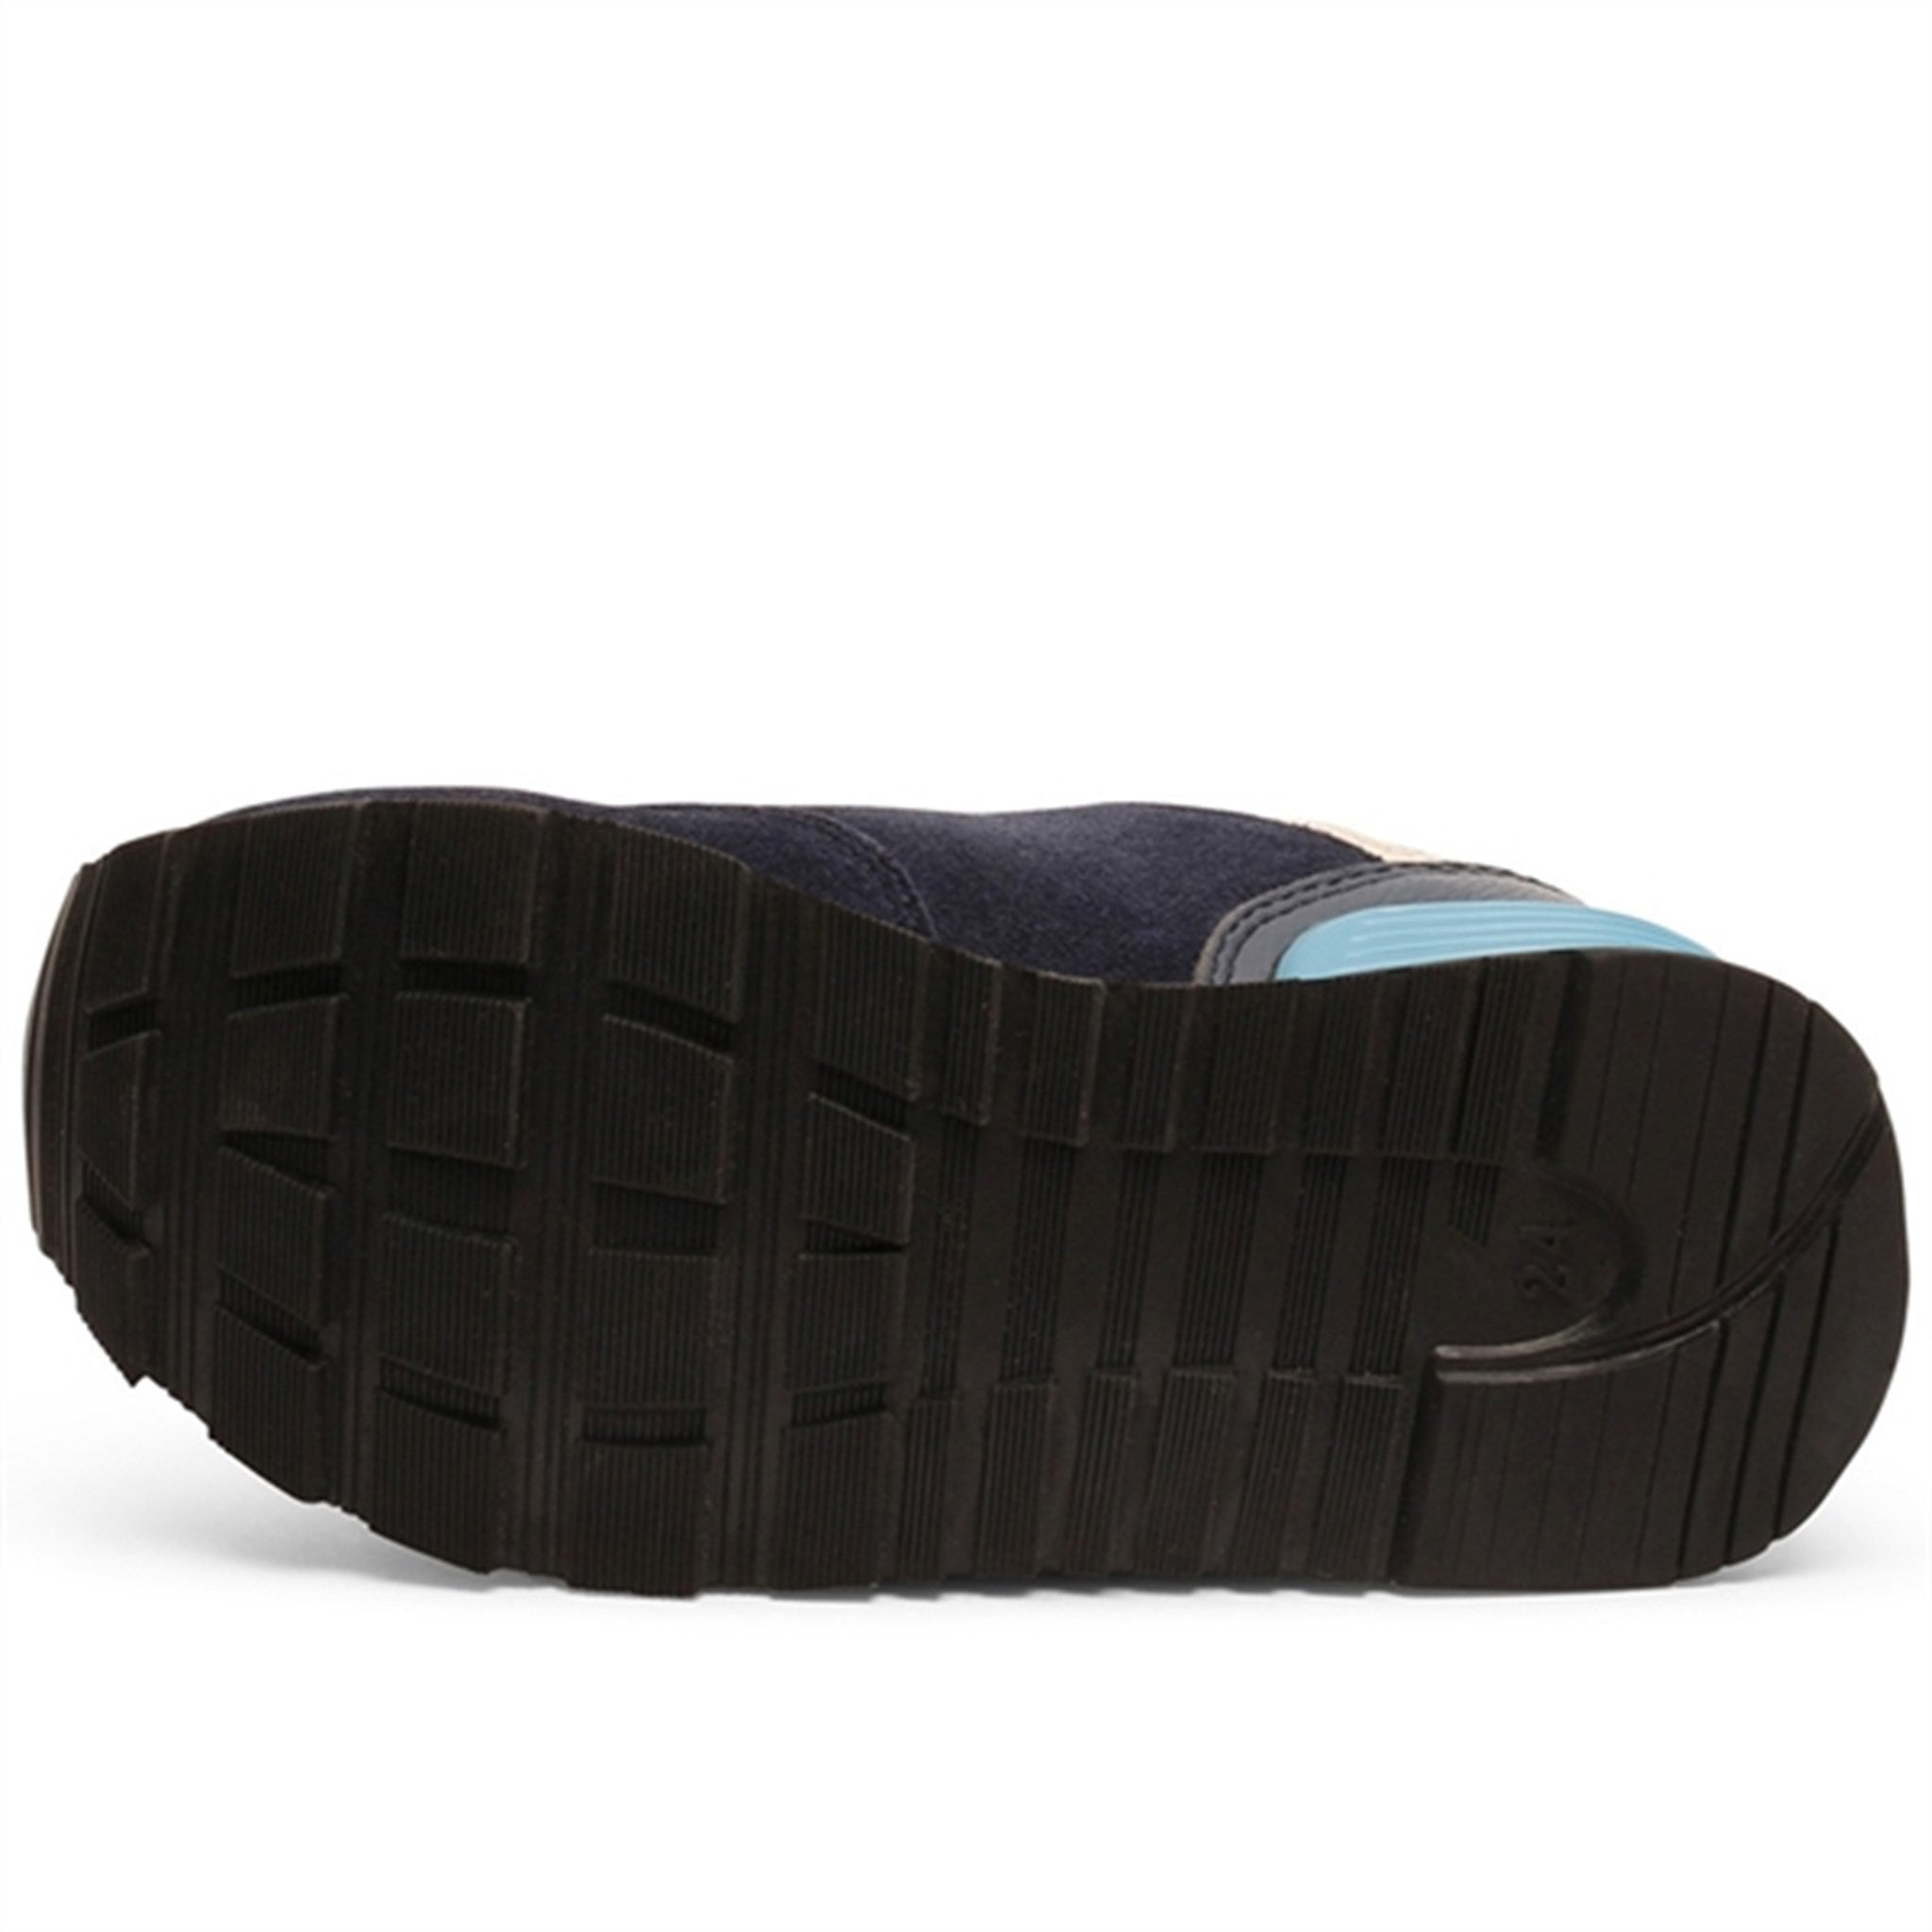 Bisgaard Winston S Velcro Shoe Navy 3